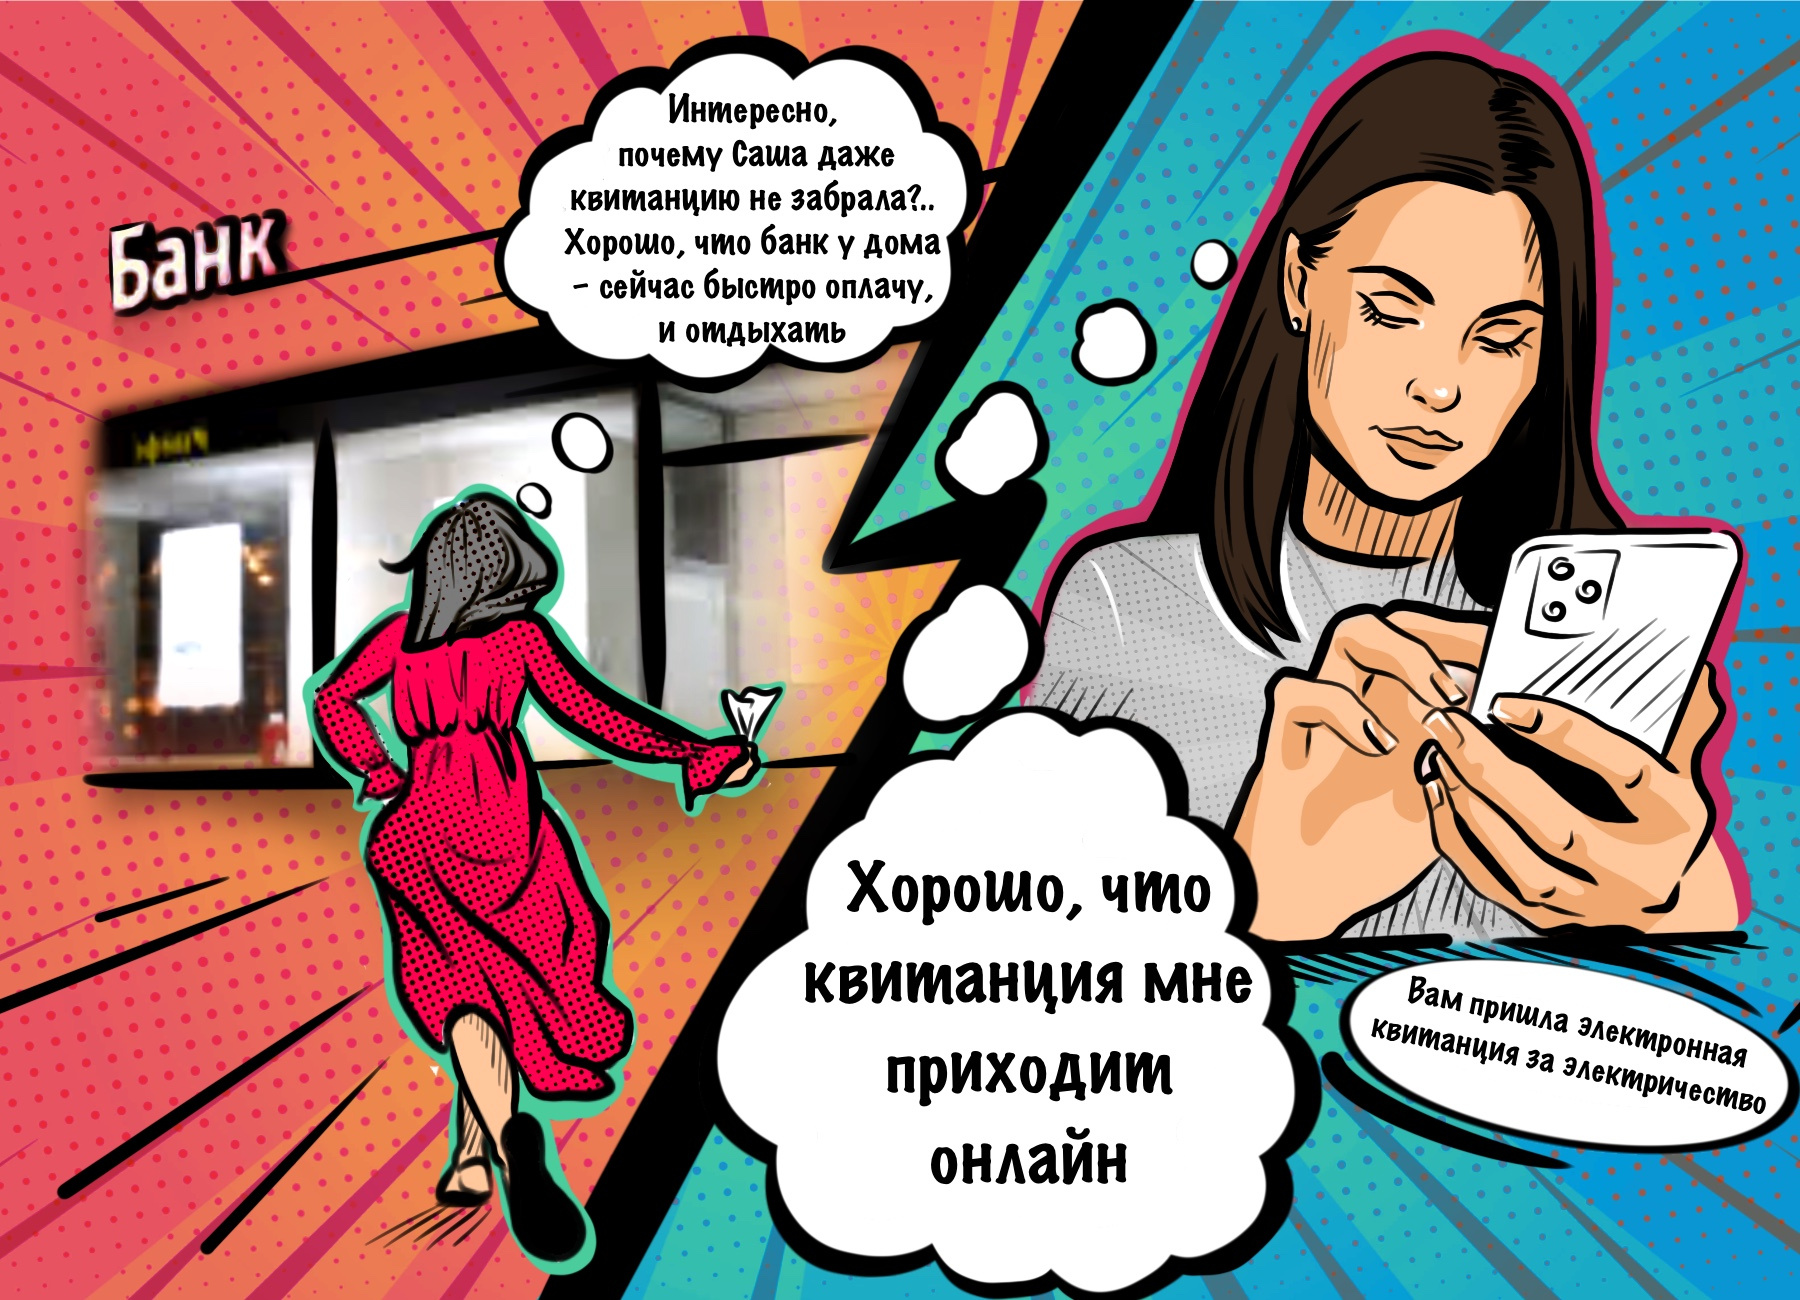 Мария Петровна с квитанцией поспешила в банк, а Саша спокойно отправилась домой — она получает квитанции в режиме онлайн